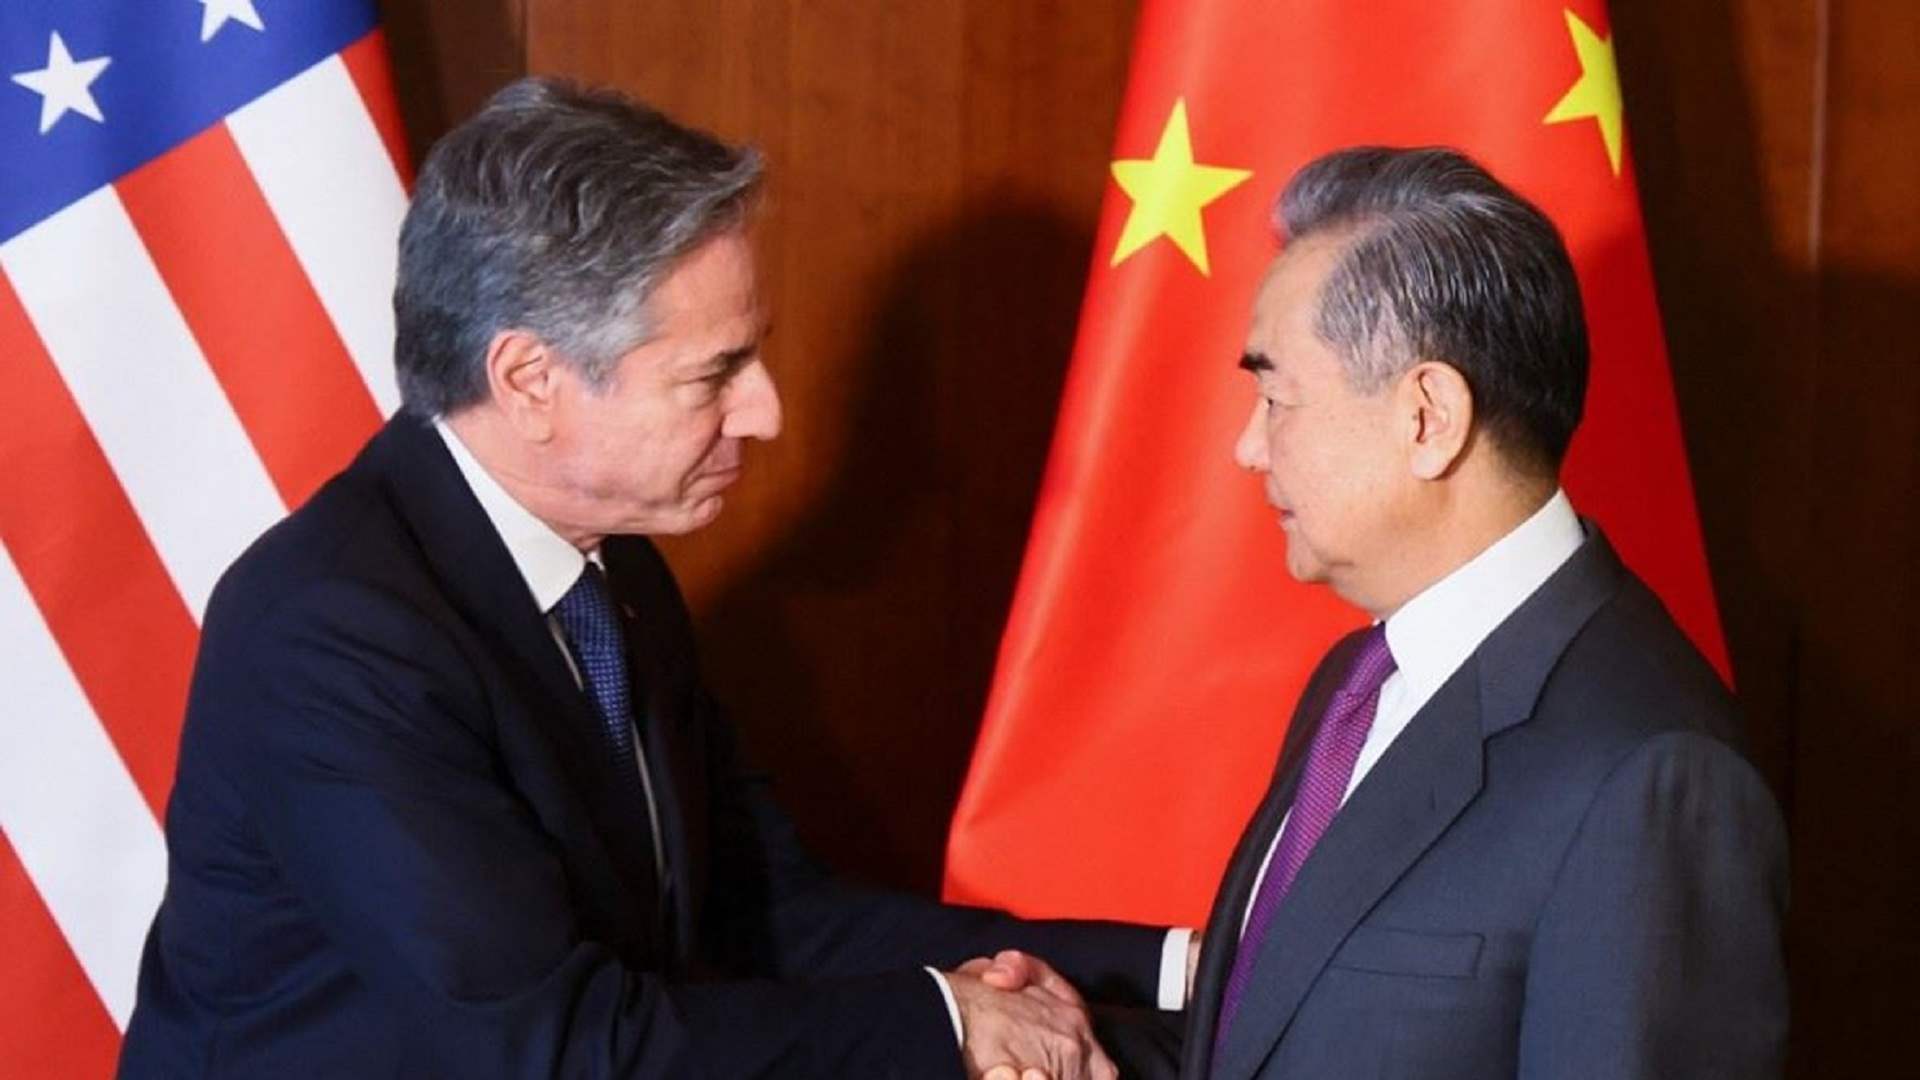 وزير الخارجية الصيني أبلغ بلينكن إنه يتعين على واشنطن رفع العقوبات عن الشركات والأفراد الصينيين